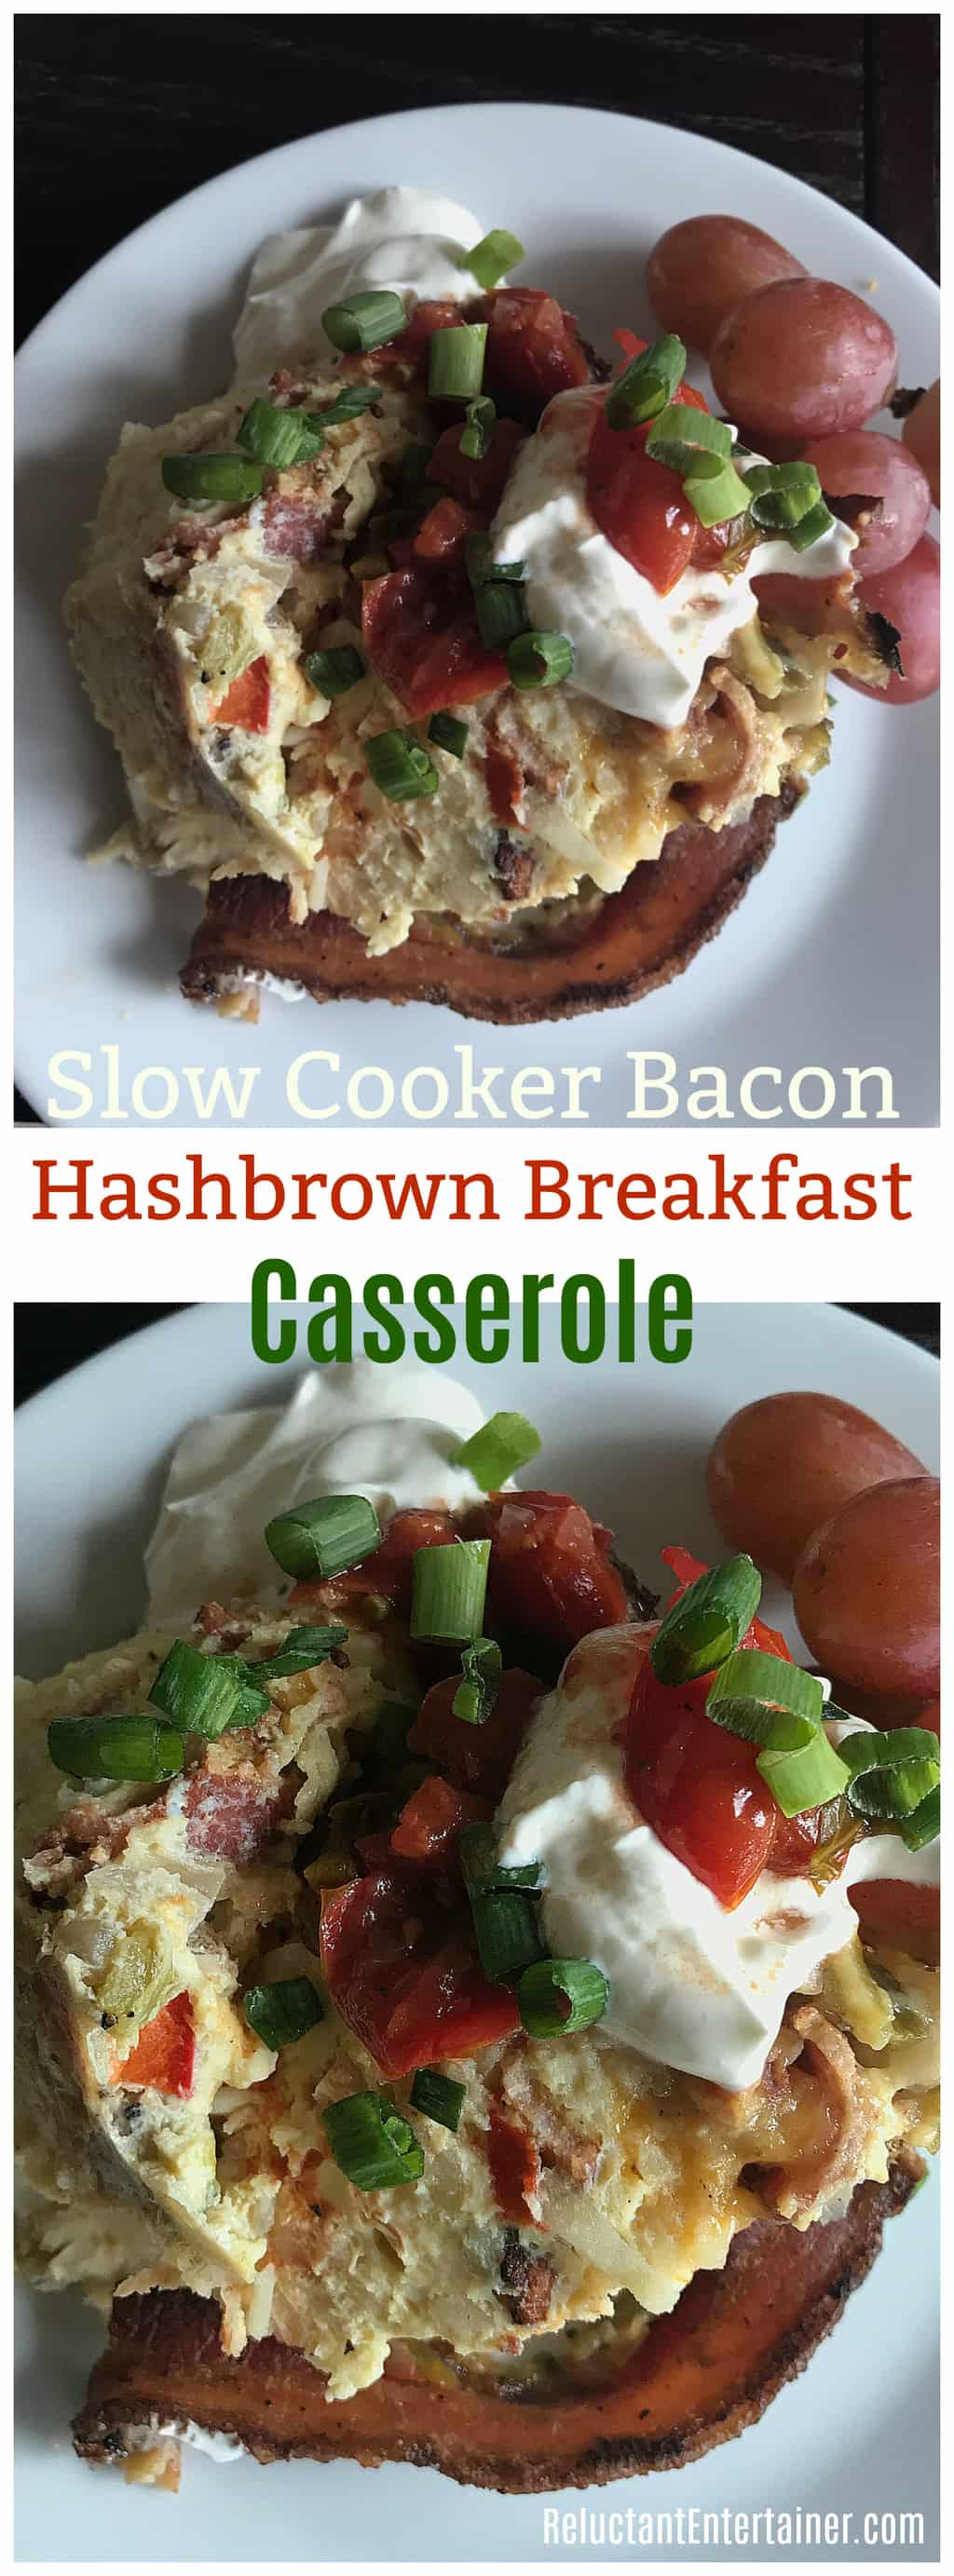 Slow Cooker Bacon Hashbrown Breakfast Casserole